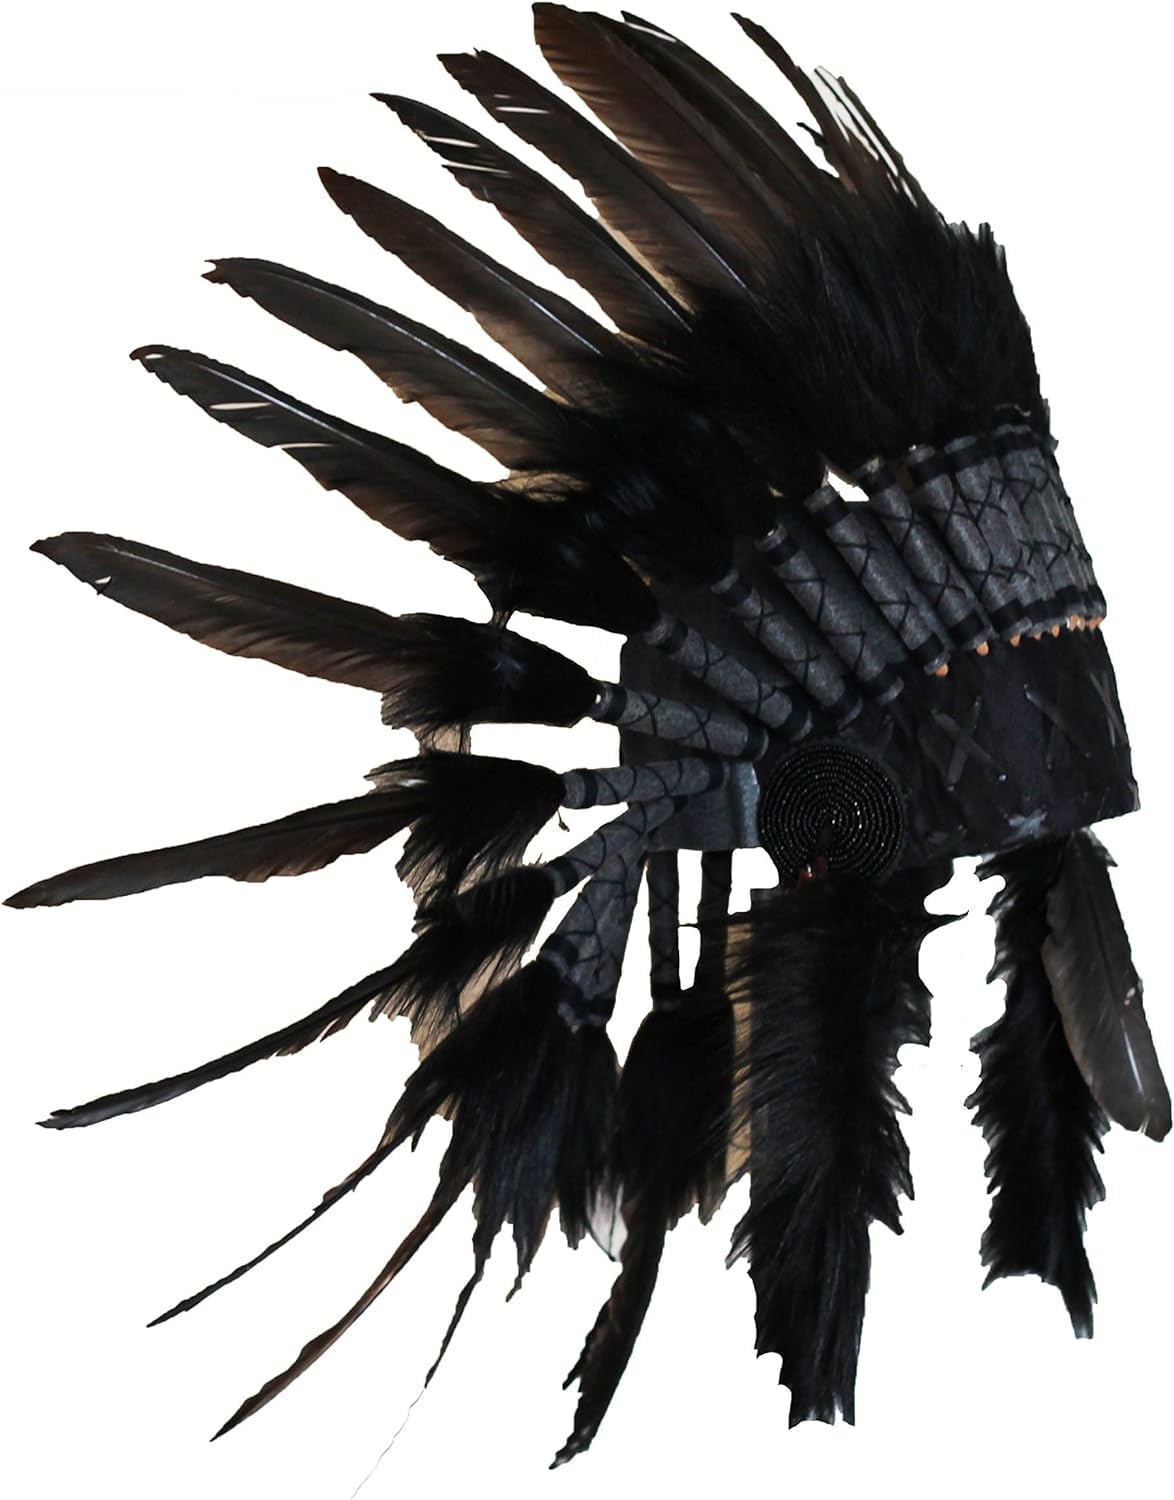 KARMABCN N64-Hut indisch, Plume, Kopfschmuck aus Federn der Farbe schwarz mit schwarzen Haaren